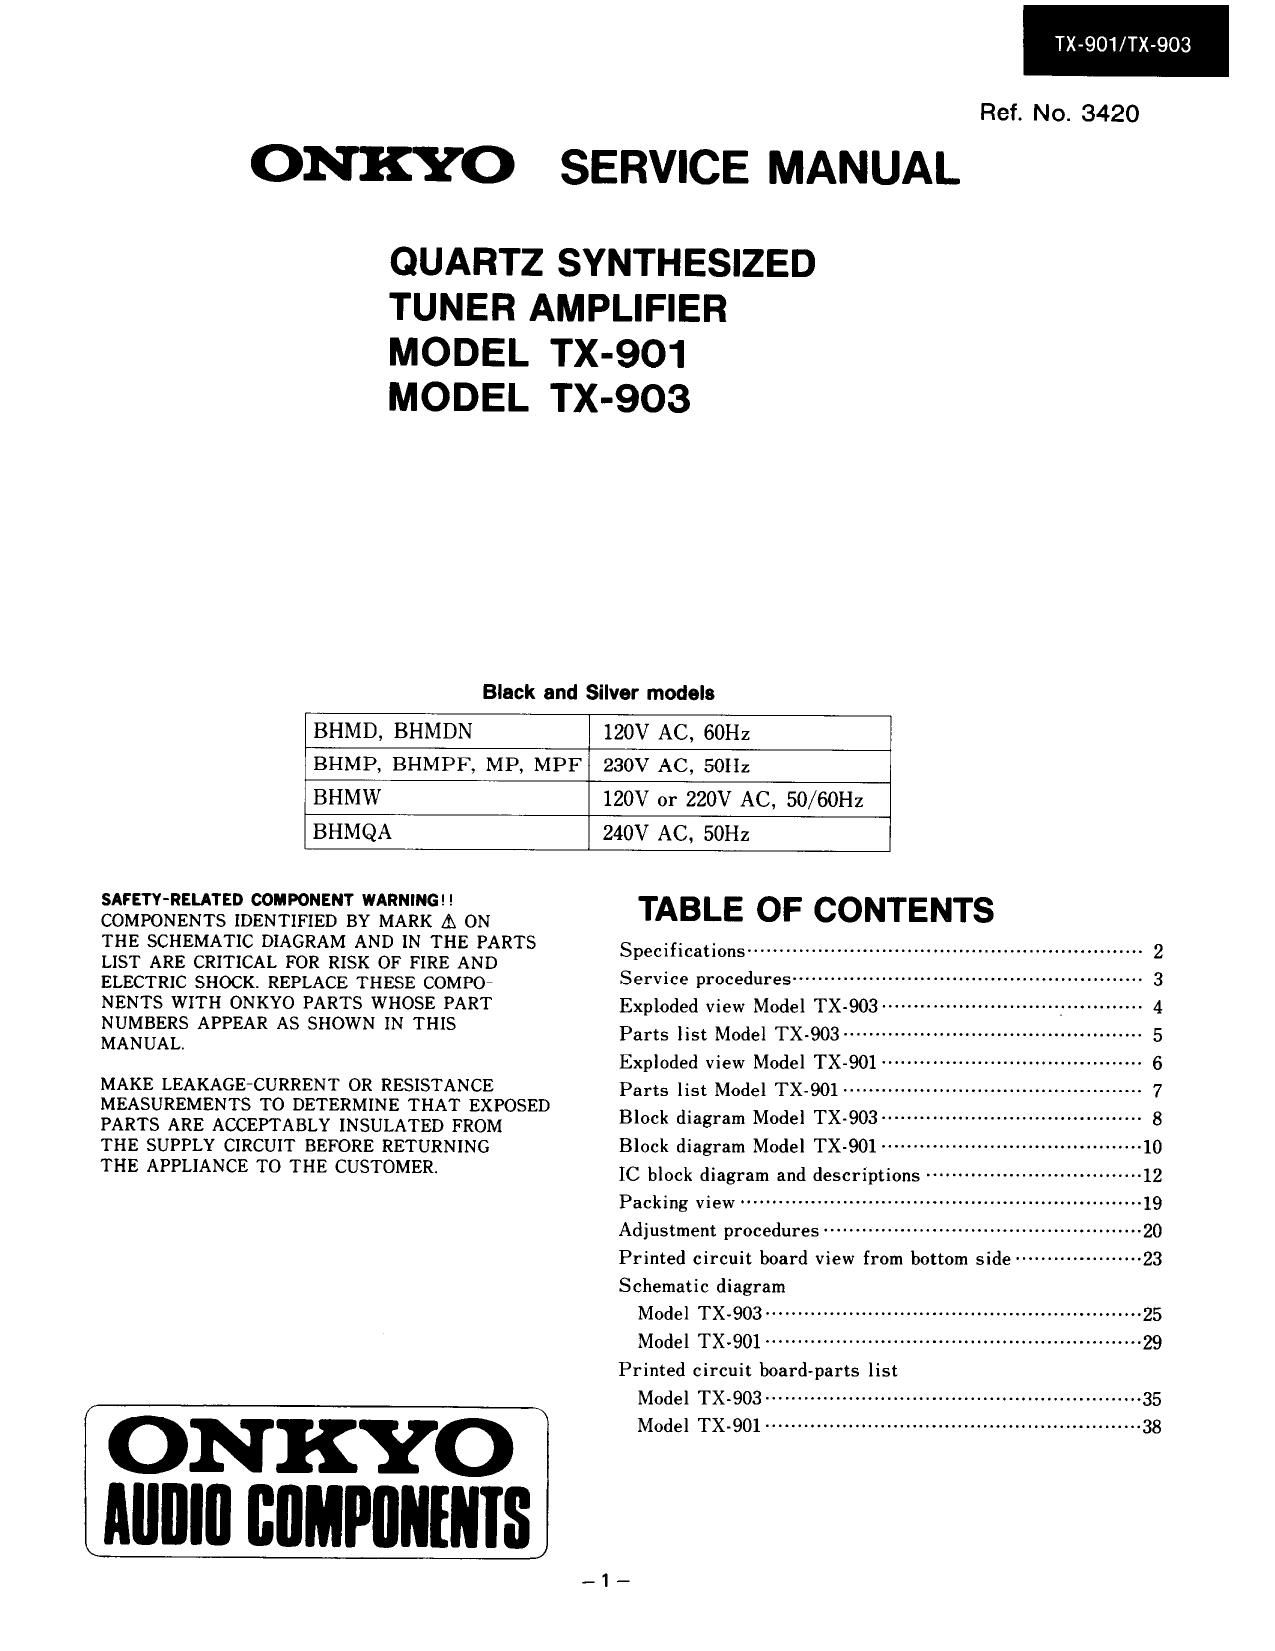 Onkyo TX 901 Service Manual